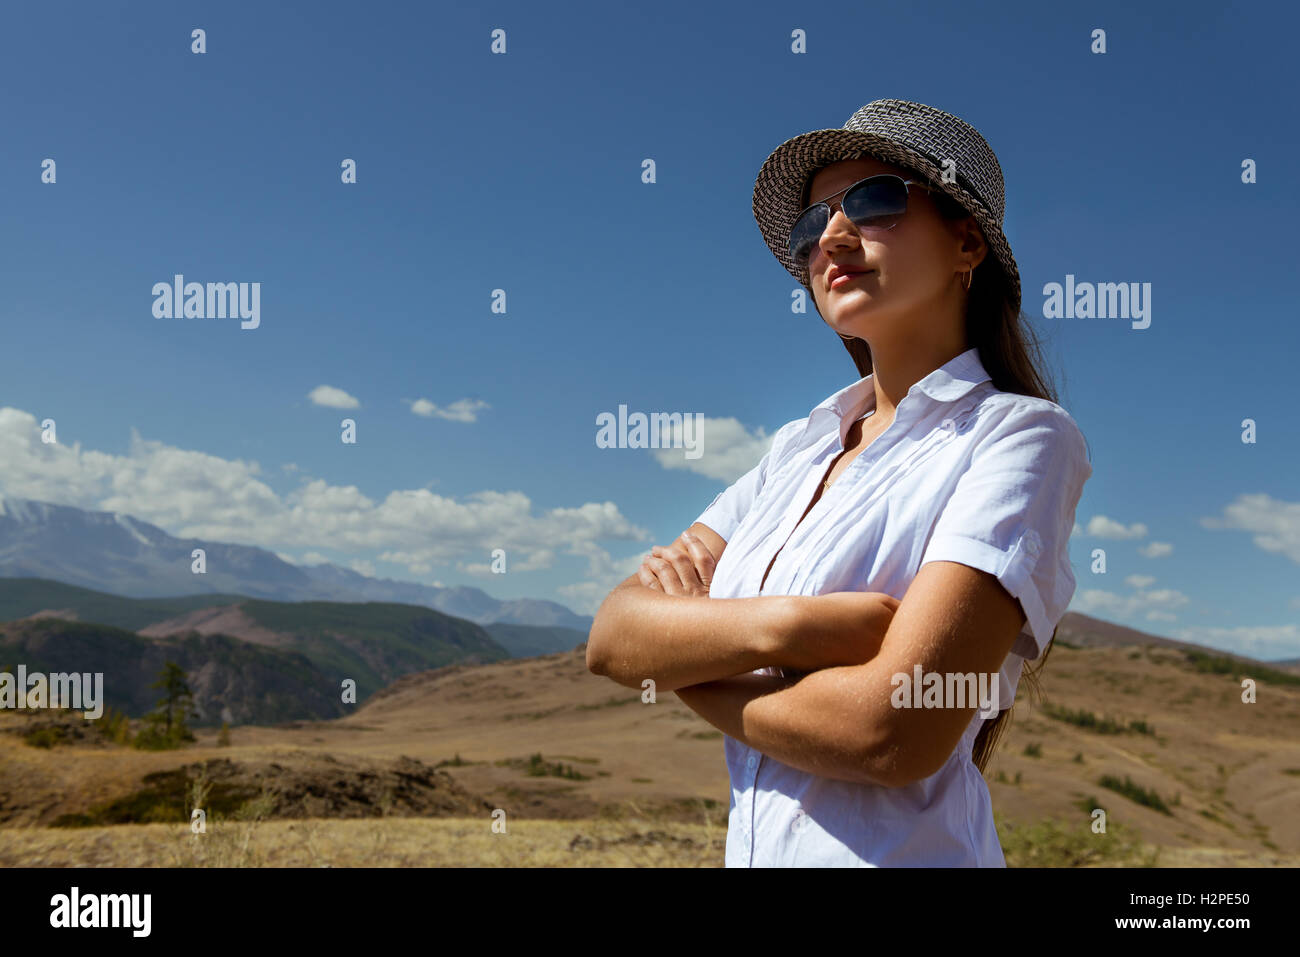 Femme avec des lunettes et un chapeau regarde ailleurs sur le fond des montagnes Banque D'Images